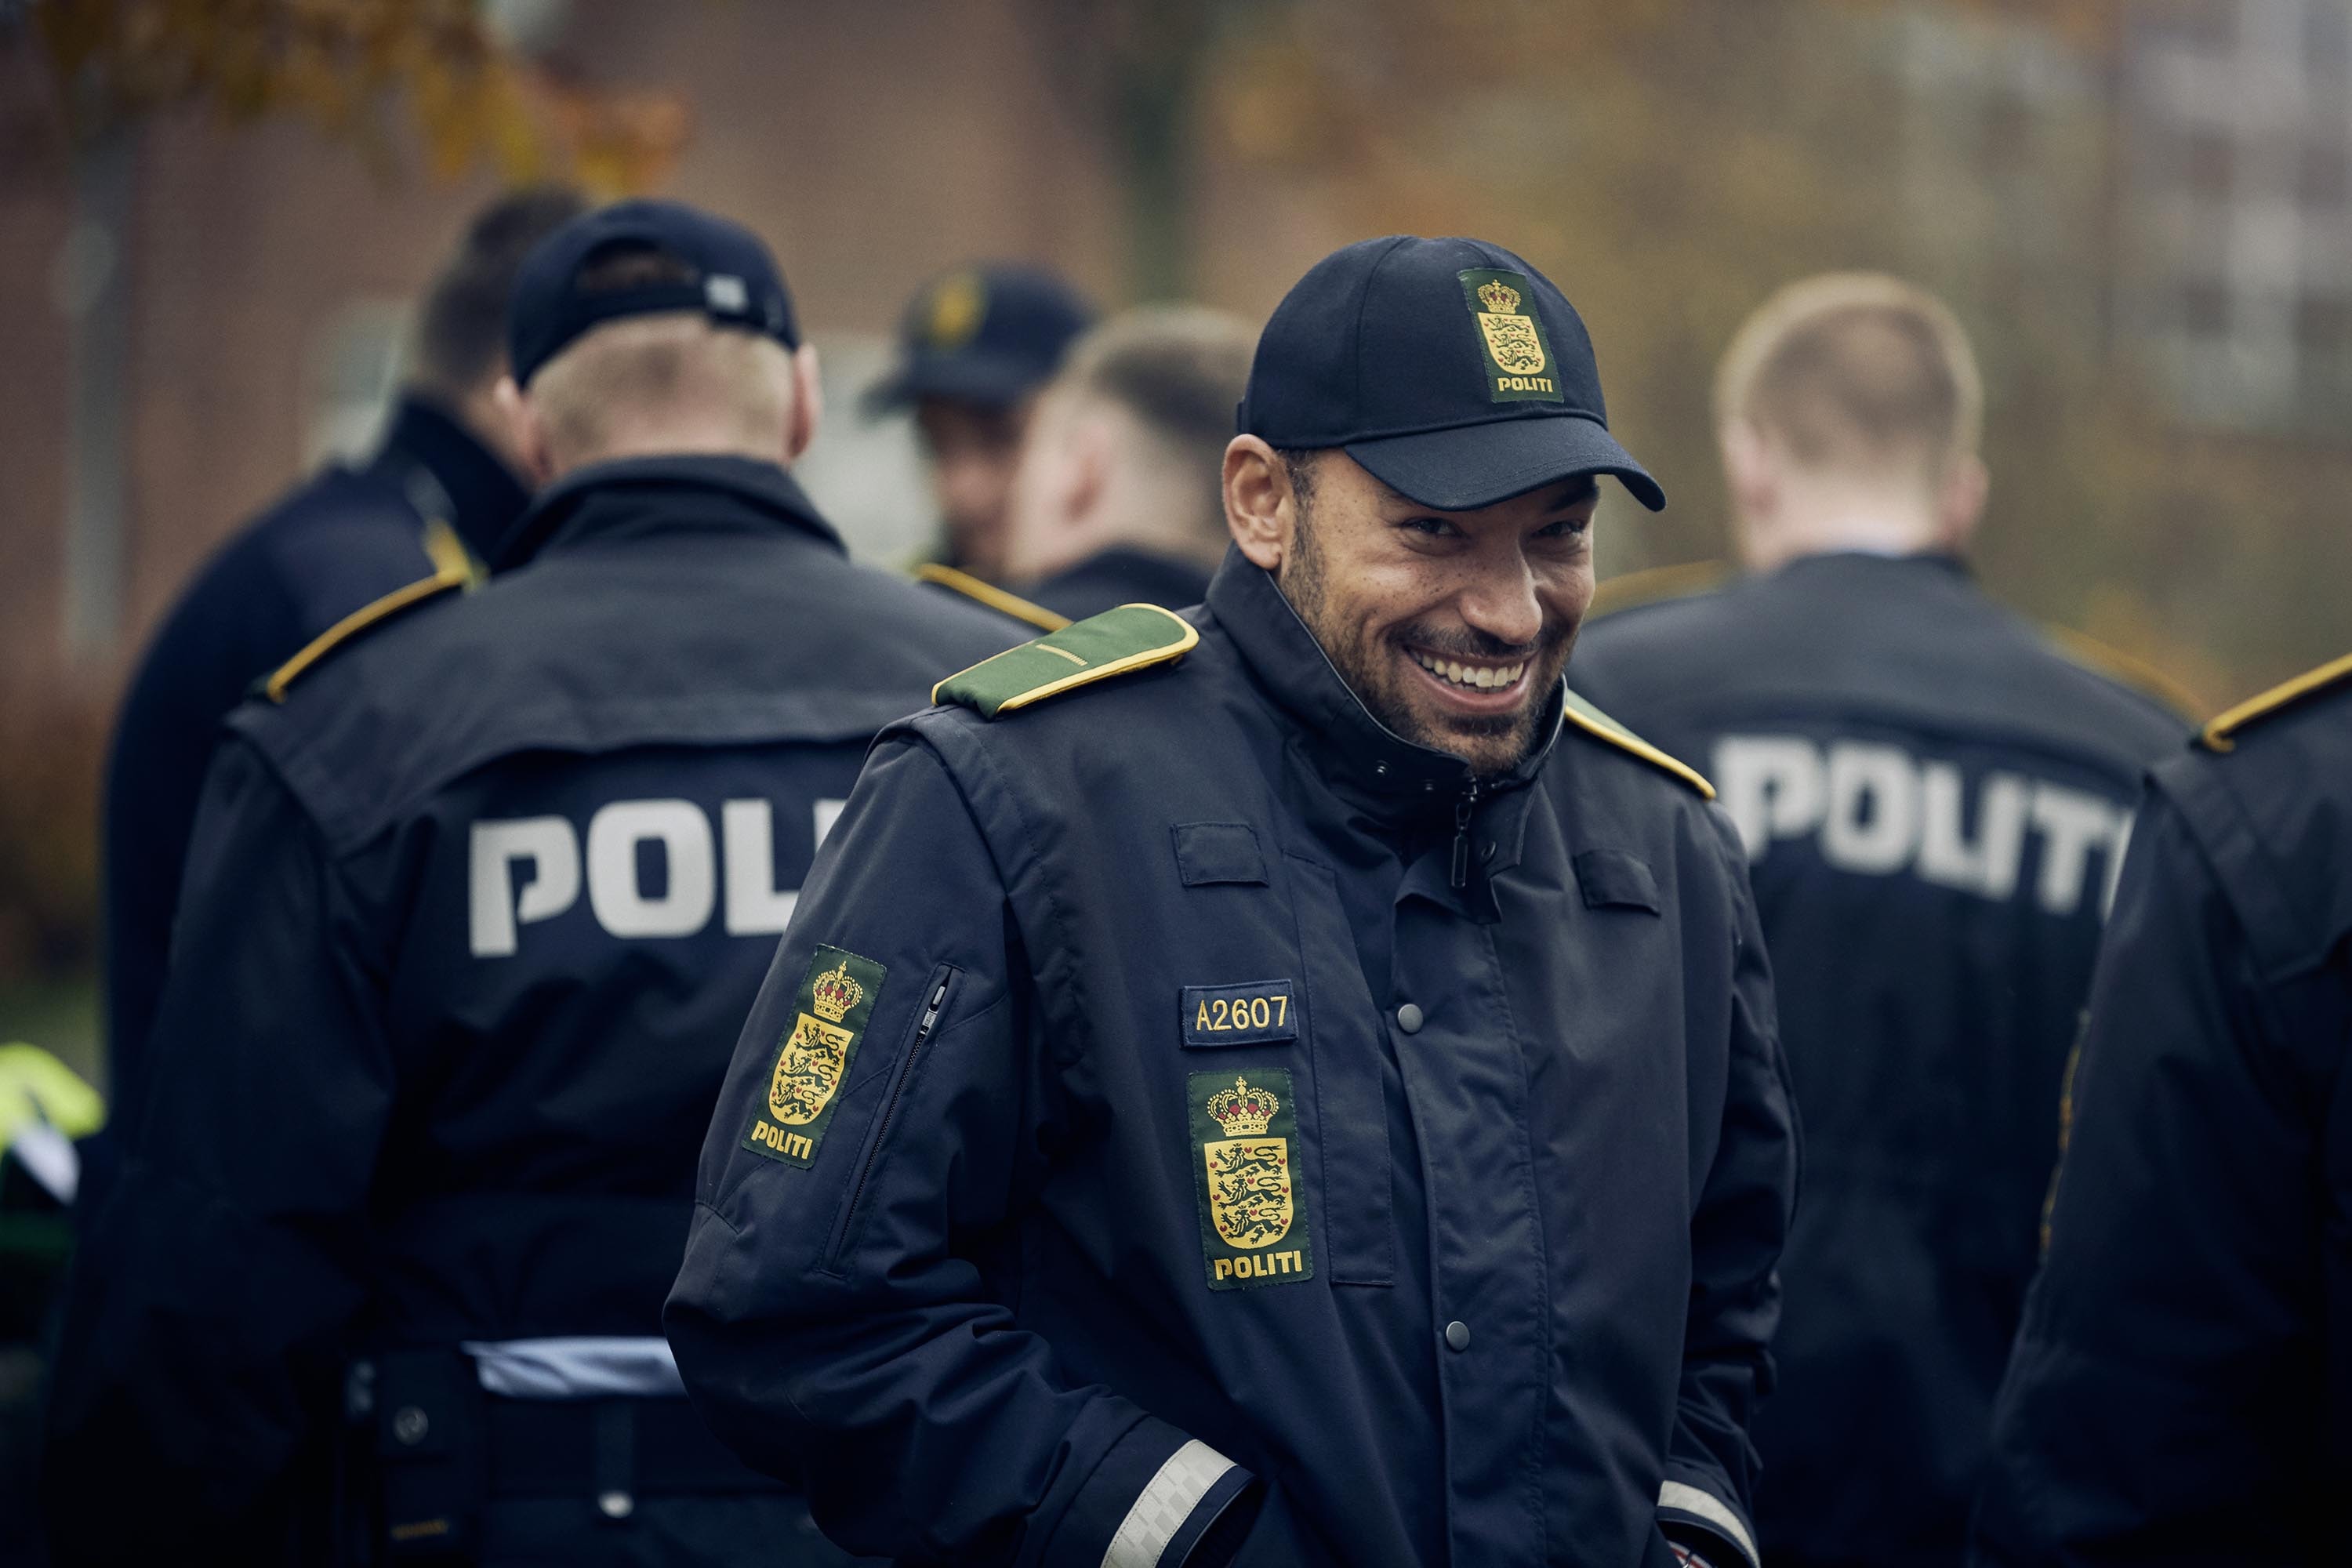 Fra politikadet til politibetjent | Politiskolen Politi